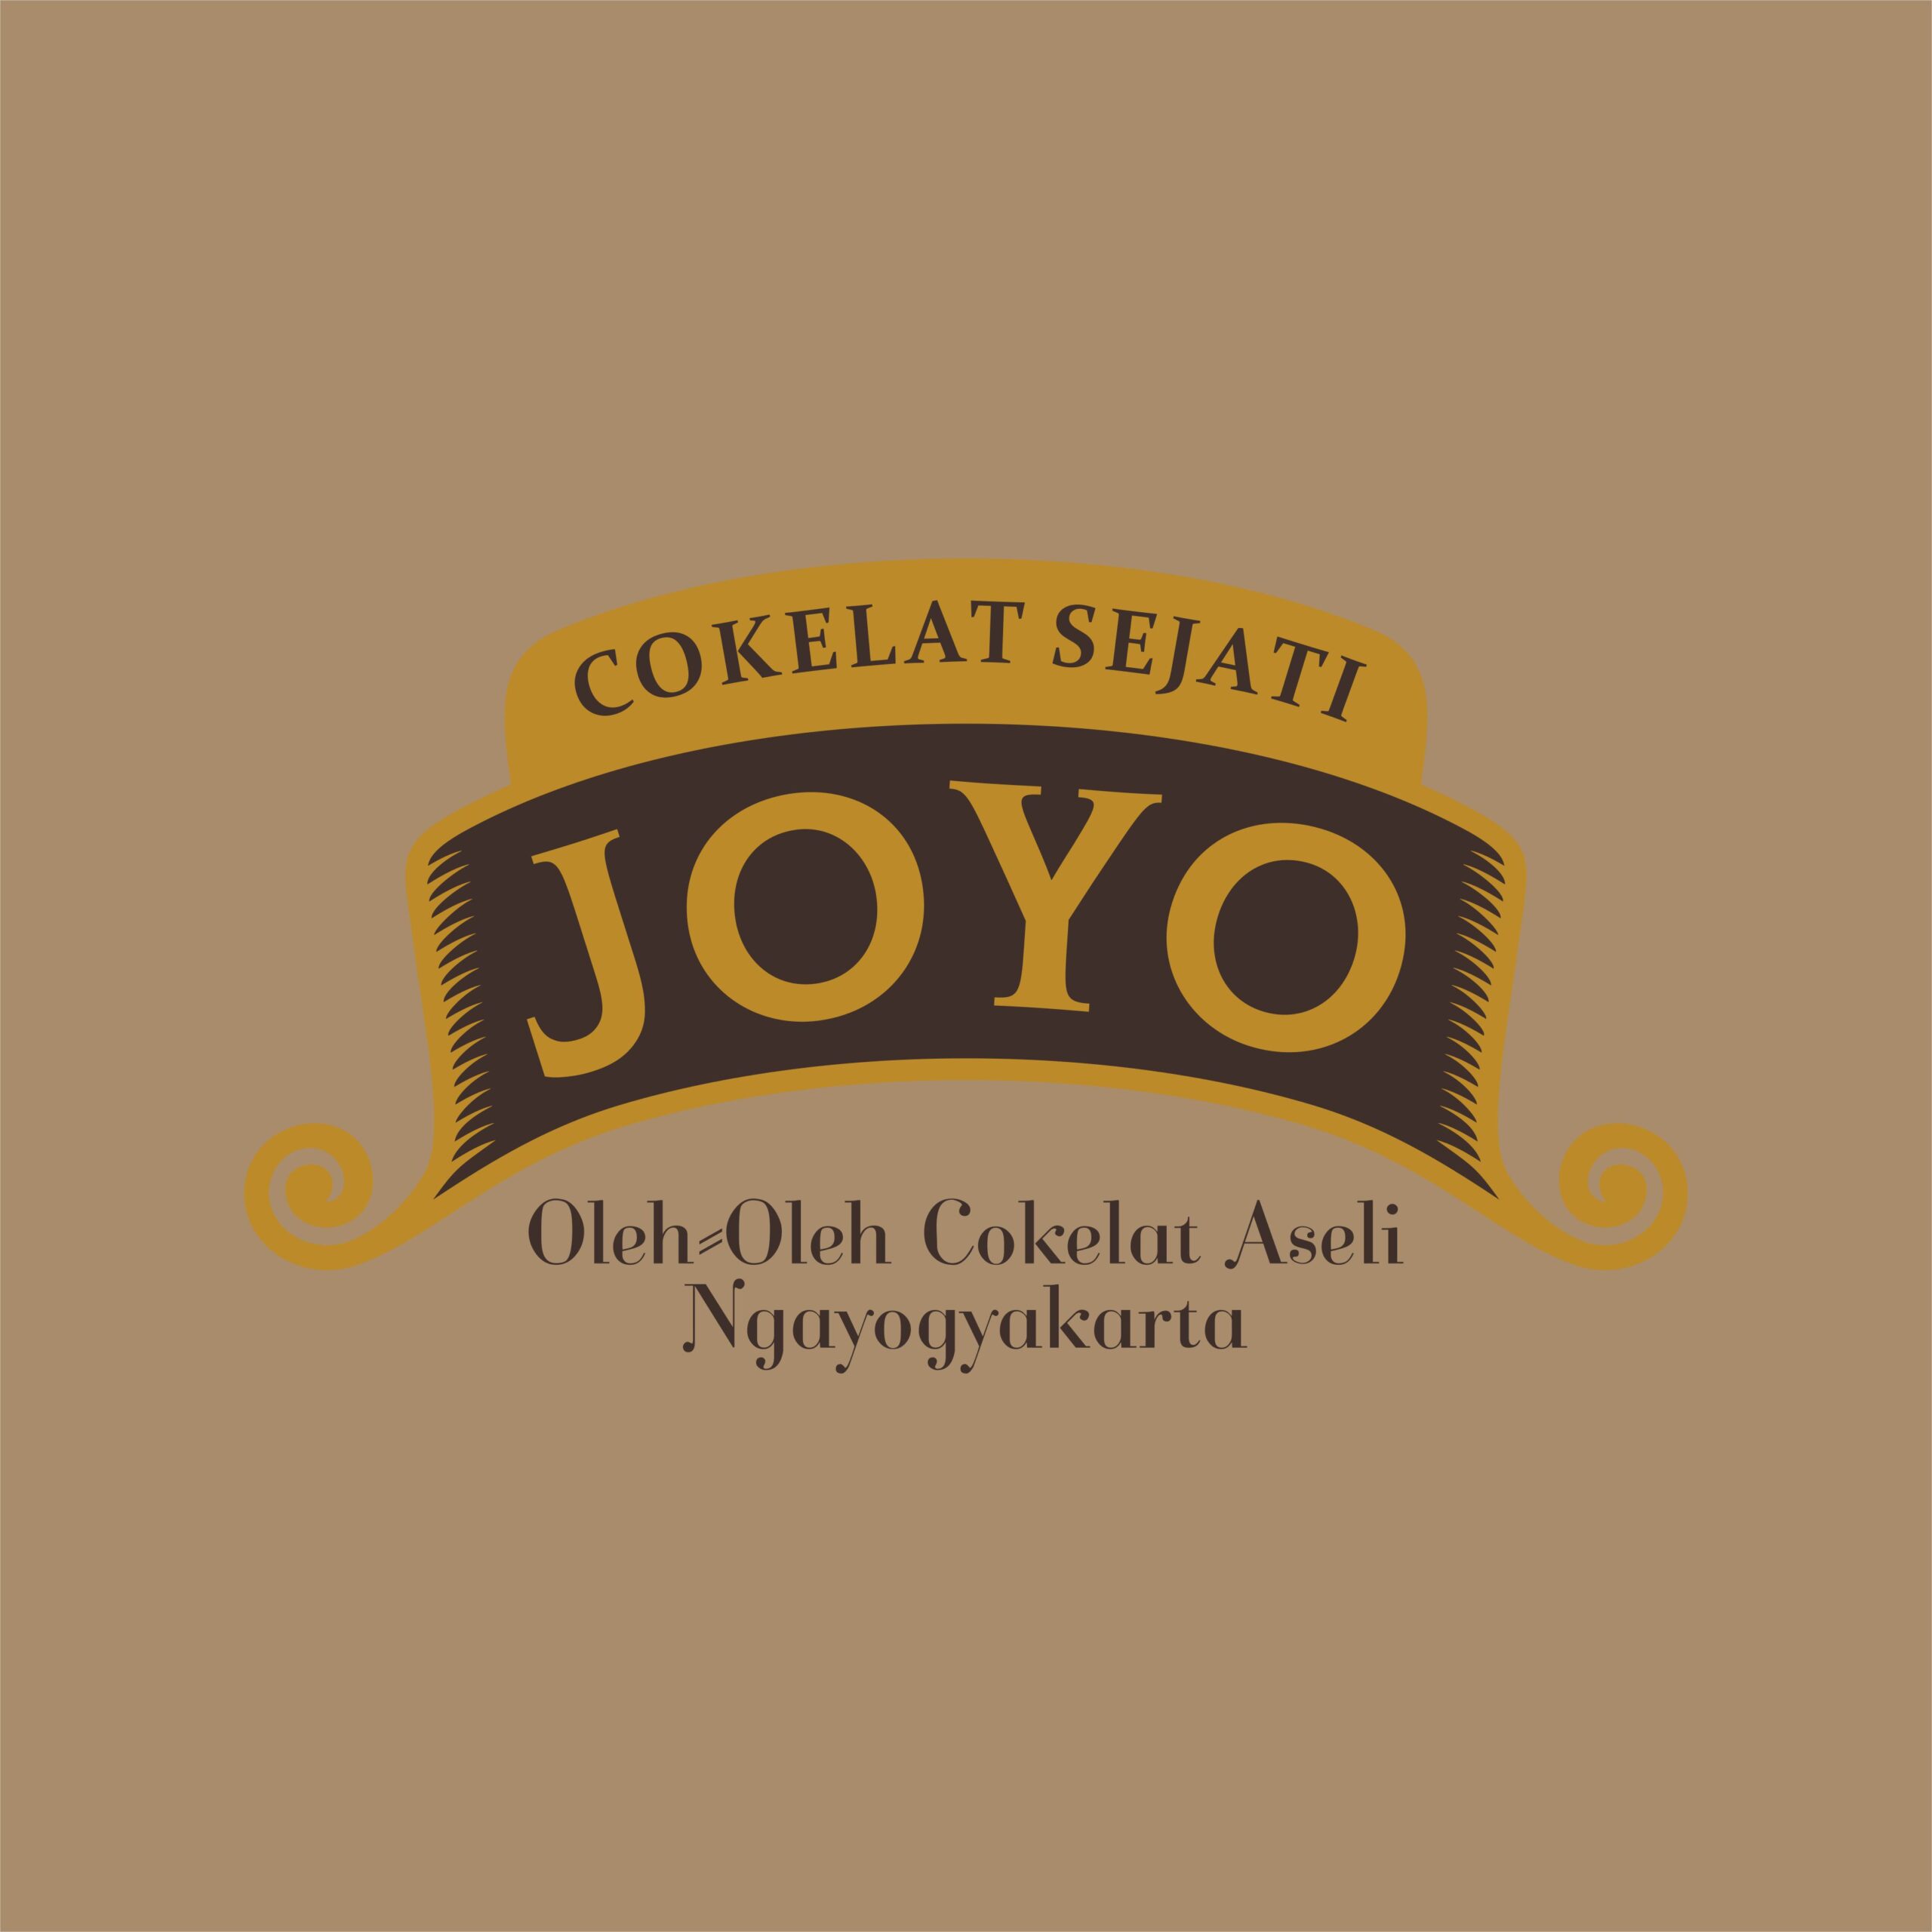 Joyo Cokelat Sejati Logo Vector